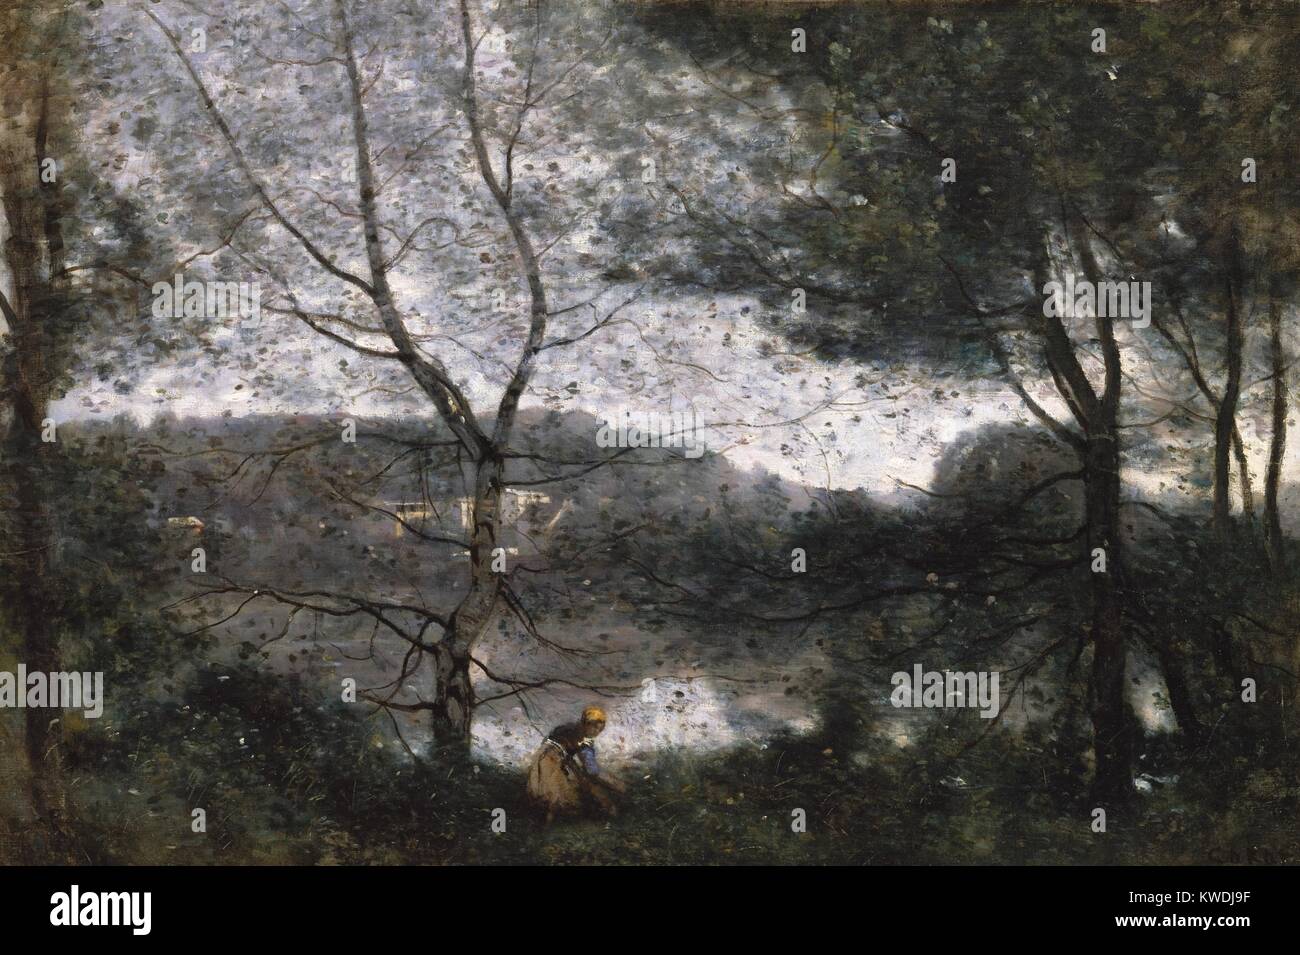 VILLE-DAVRAY, von Camille Corot, 1870, Französische Malerei, Öl auf Leinwand. Dies wird gemalt, auf dem Grundstück der Künstler von seinen Eltern geerbt - Ville dAvray (BSLOC 2017 9 91) Stockfoto